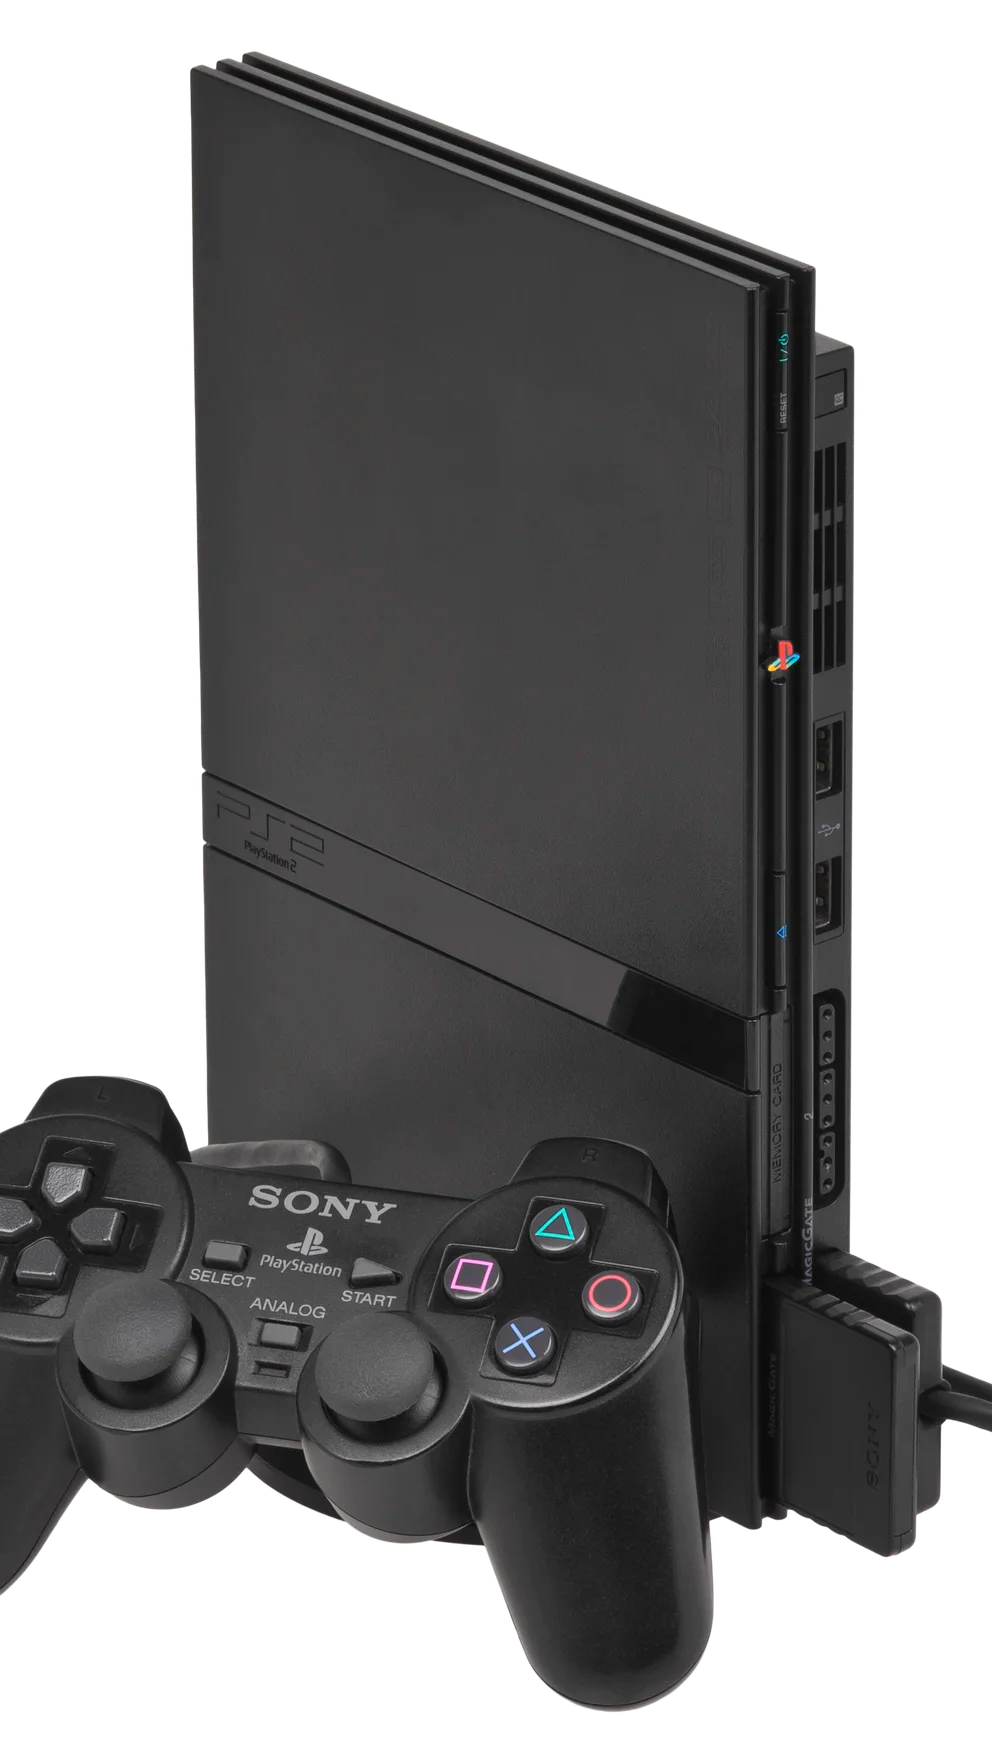 PlayStation 2: 20 años de la consola más vendida de la historia, TENDENCIAS